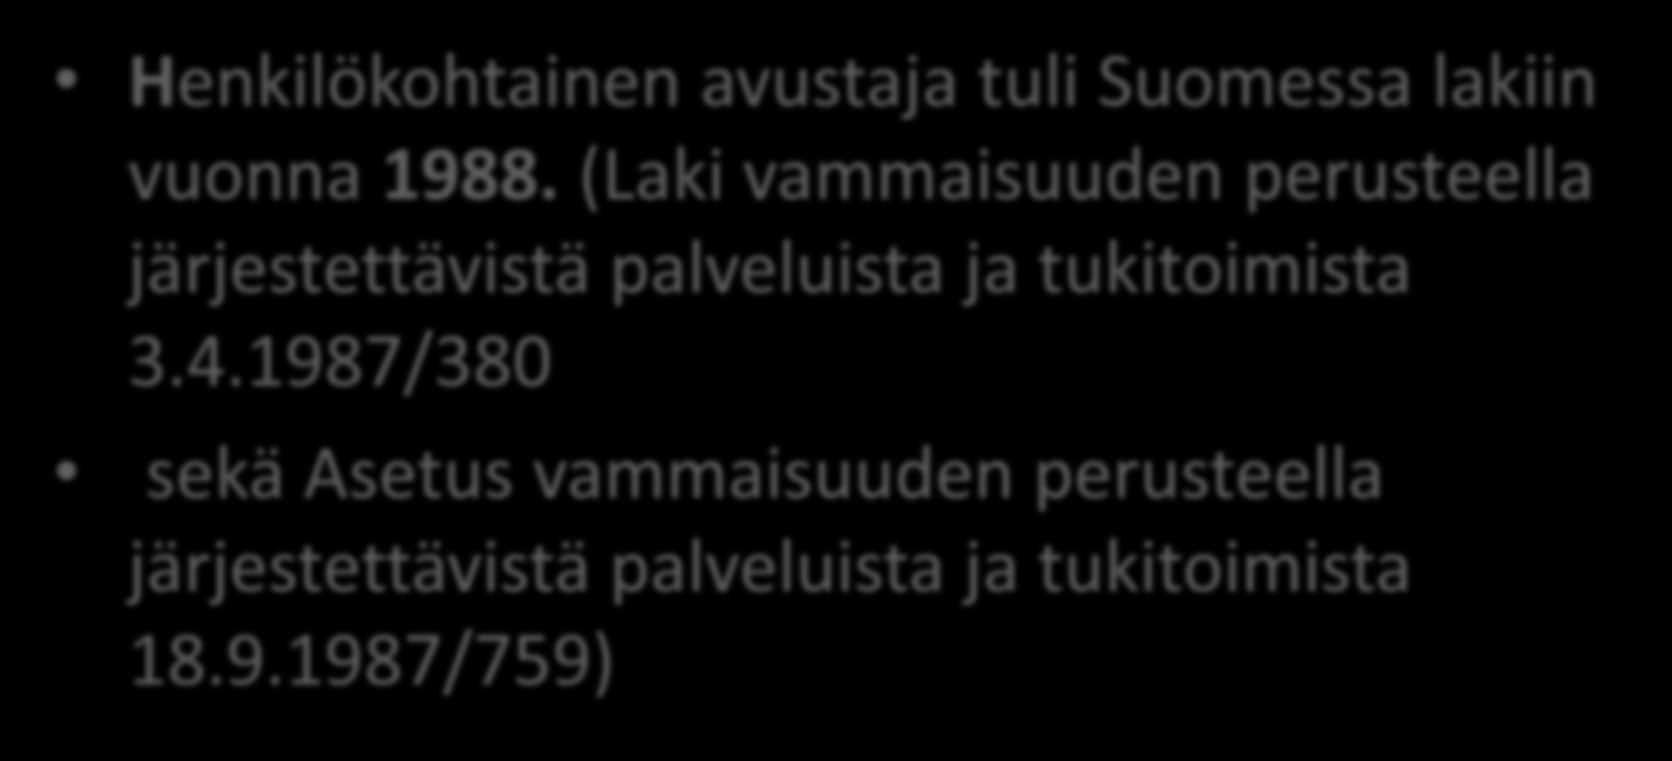 Henkilökohtainen avustaja tuli Suomessa lakiin vuonna 1988.